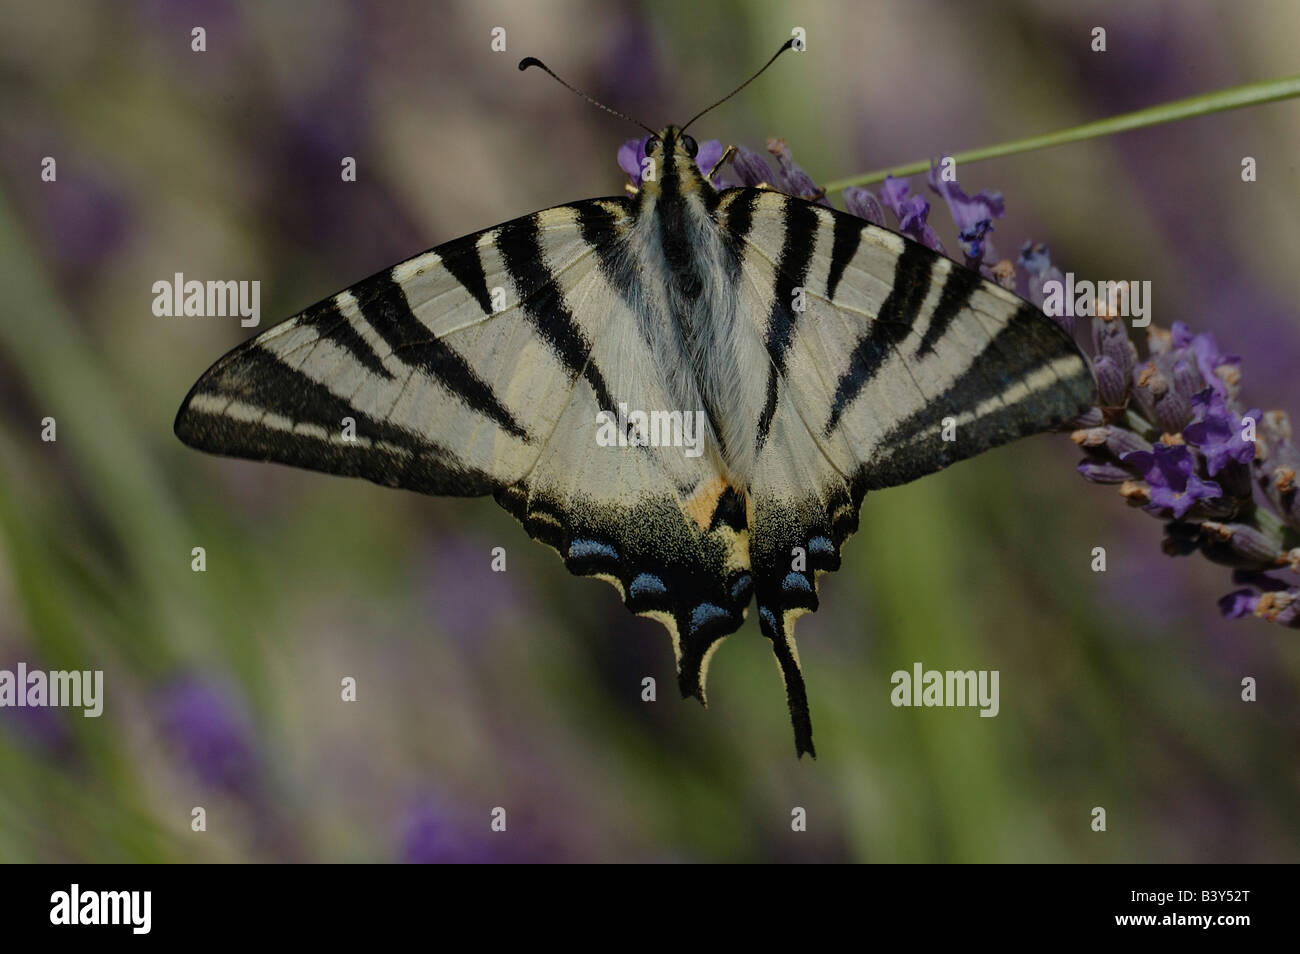 Der knappe Schwalbenschwanz Schmetterling findet sich in Gärten, Feldern und offenen Wäldern. Hier in Lavendelblüten in der Provence gesehen. Stockfoto